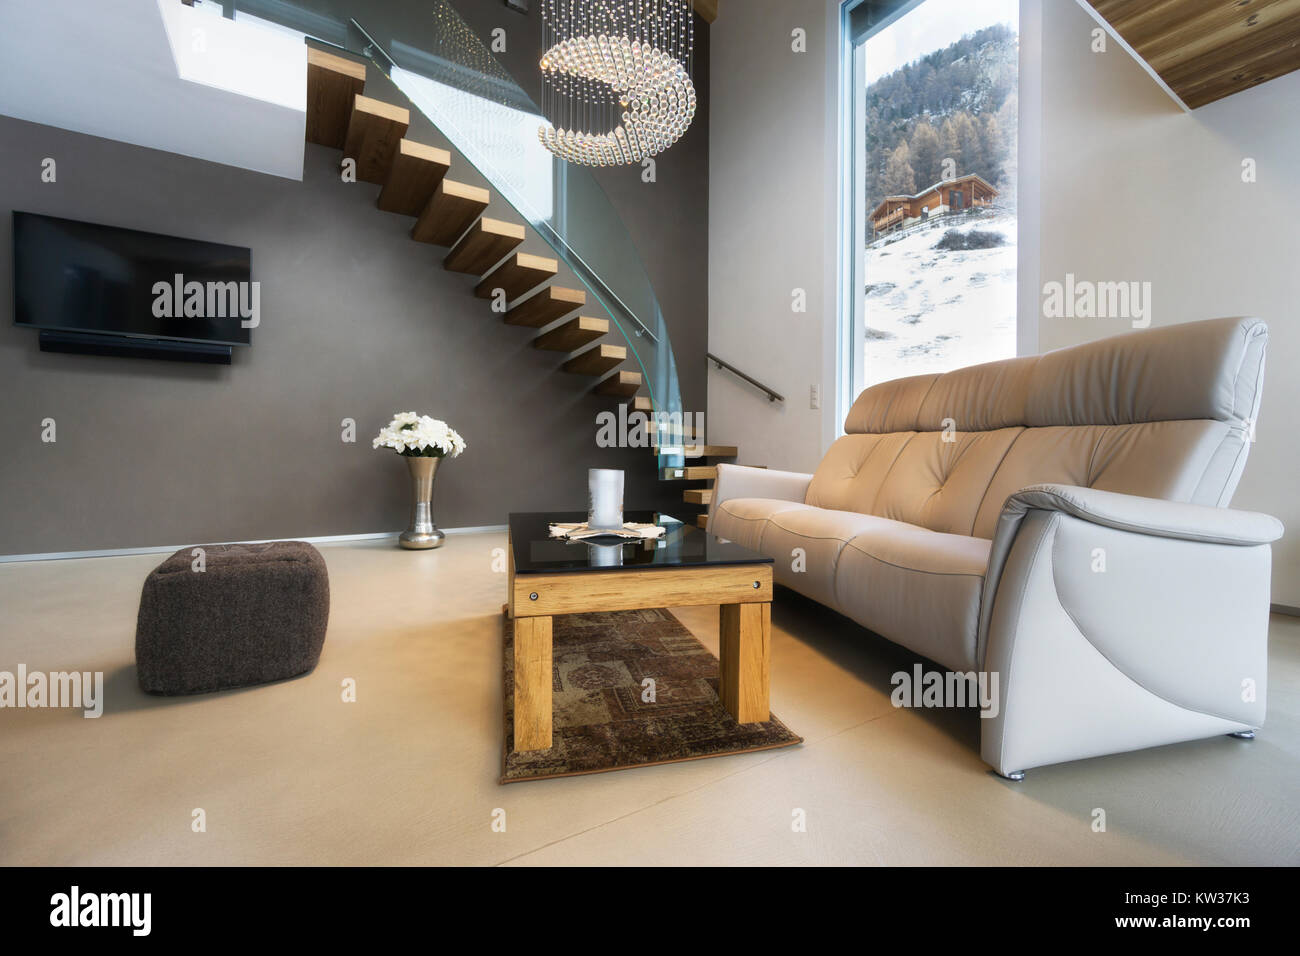 Wohnzimmer von Luxus haus mit Bergblick in modernem Design Stockfoto